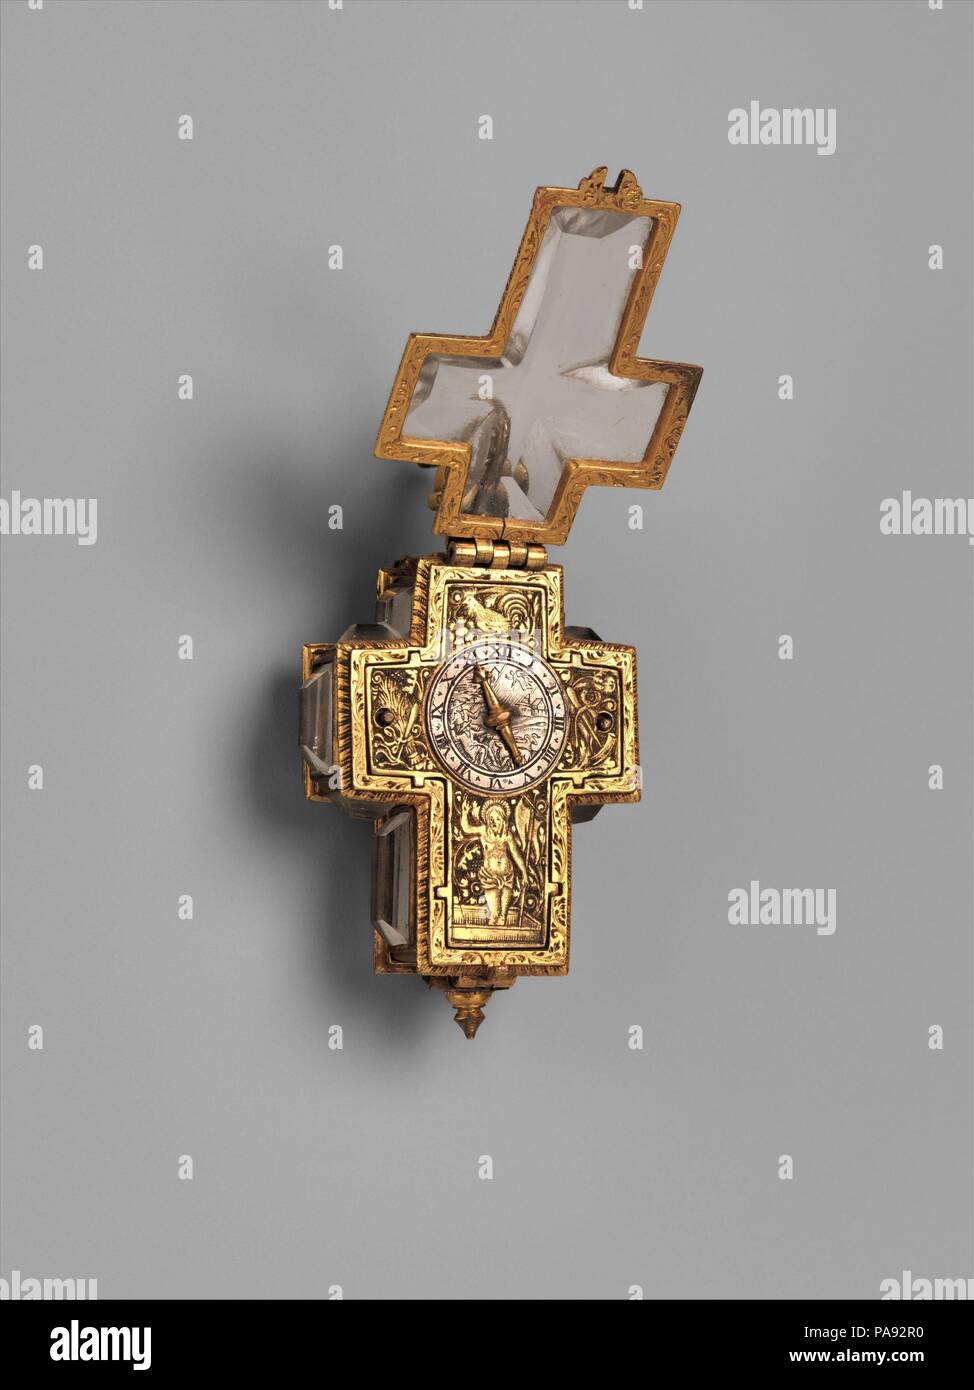 Guarda. Cultura: Swiss, Ginevra. Dimensioni: complessivo: 1 7/8 x 1 1/4 in. (4,8 × 3,2 cm). Autore: orologiaio: Anthoine Arlaud (nato ca. 1590, dopo 1641). Data: ca. 1620-30. Arlaud, un rifugiato Huguenot dal francese della Auvergne, è stato il primo di una dinastia di orologiai di Ginevra. Egli divenne un burgher a Ginevra nel 1617. La forma di questo orologio e la scena del Cristo Risorto con gli emblemi della Passione, sono sicuramente i promemoria della brevità della vita sulla terra e dell'importanza della salvezza dell'anima. Museo: Metropolitan Museum of Art di New York, Stati Uniti d'America. Foto Stock